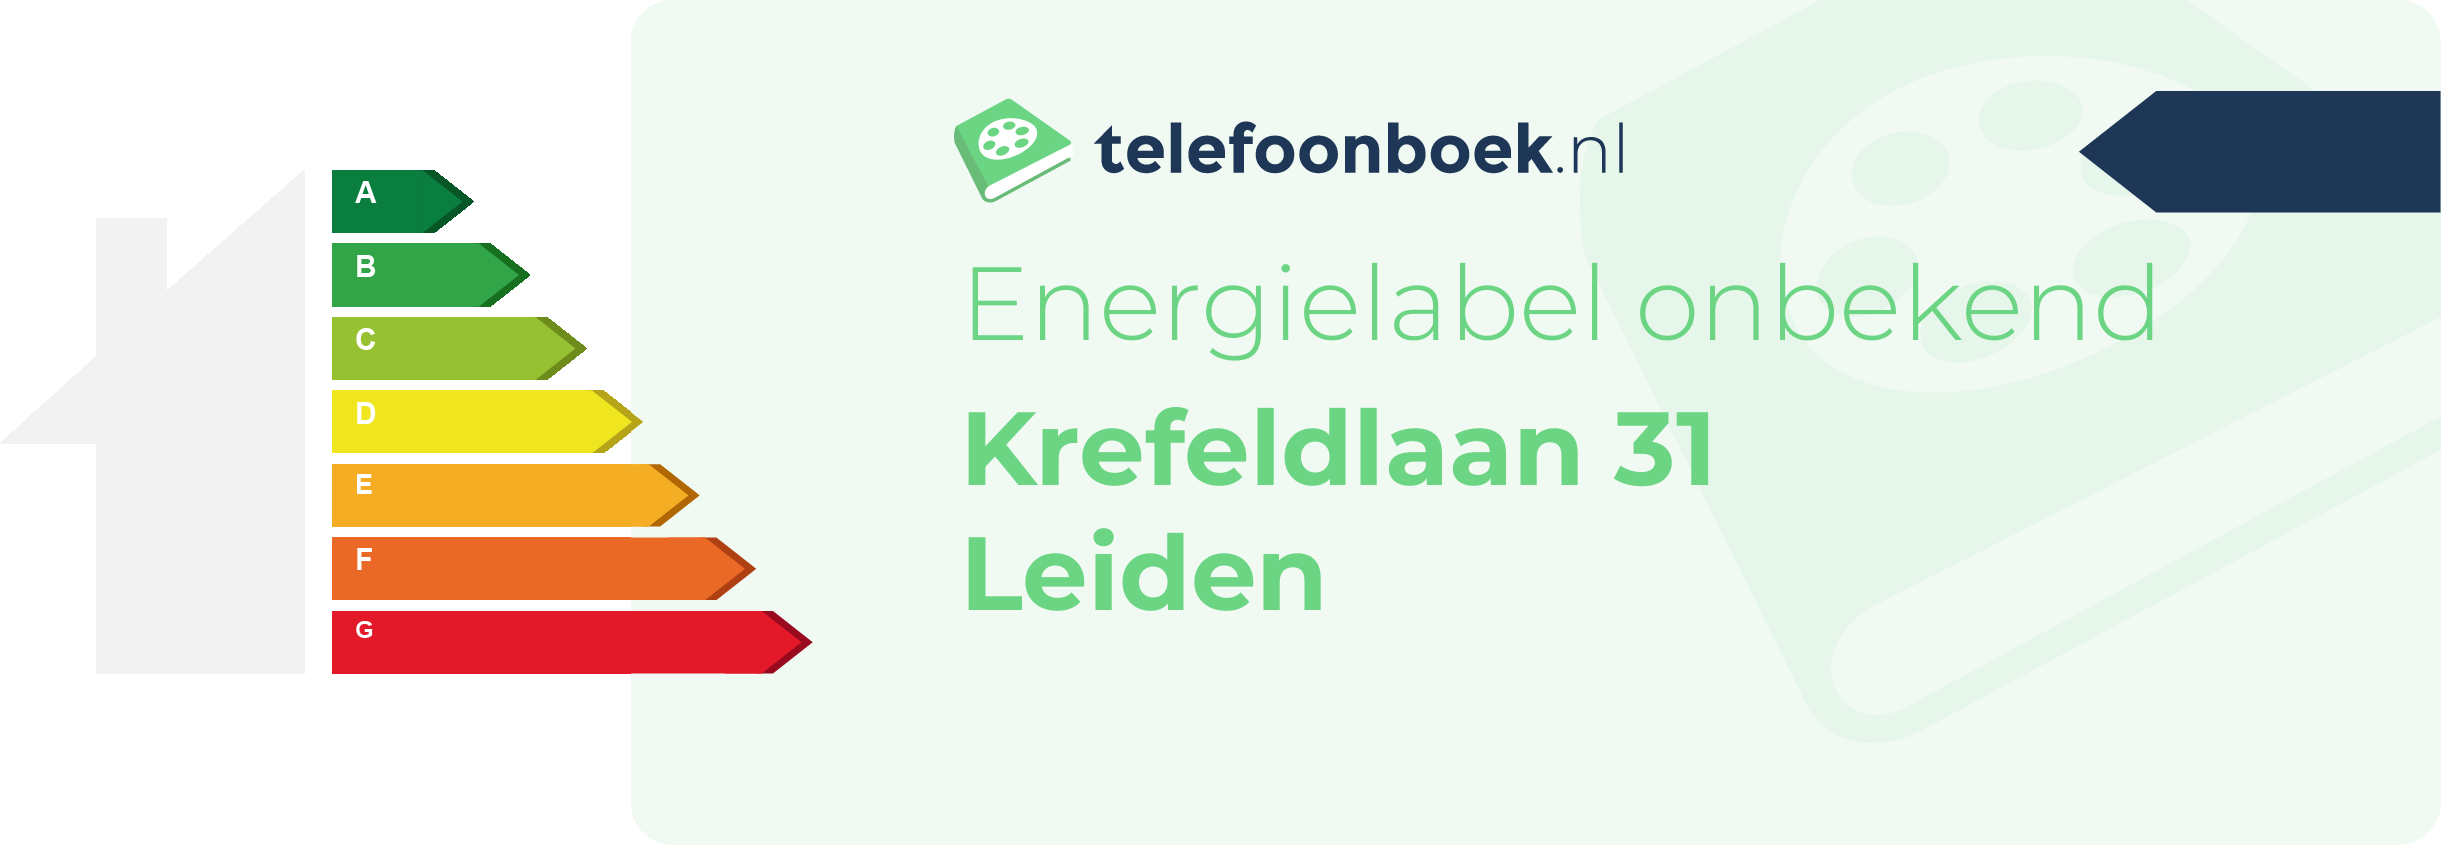 Energielabel Krefeldlaan 31 Leiden